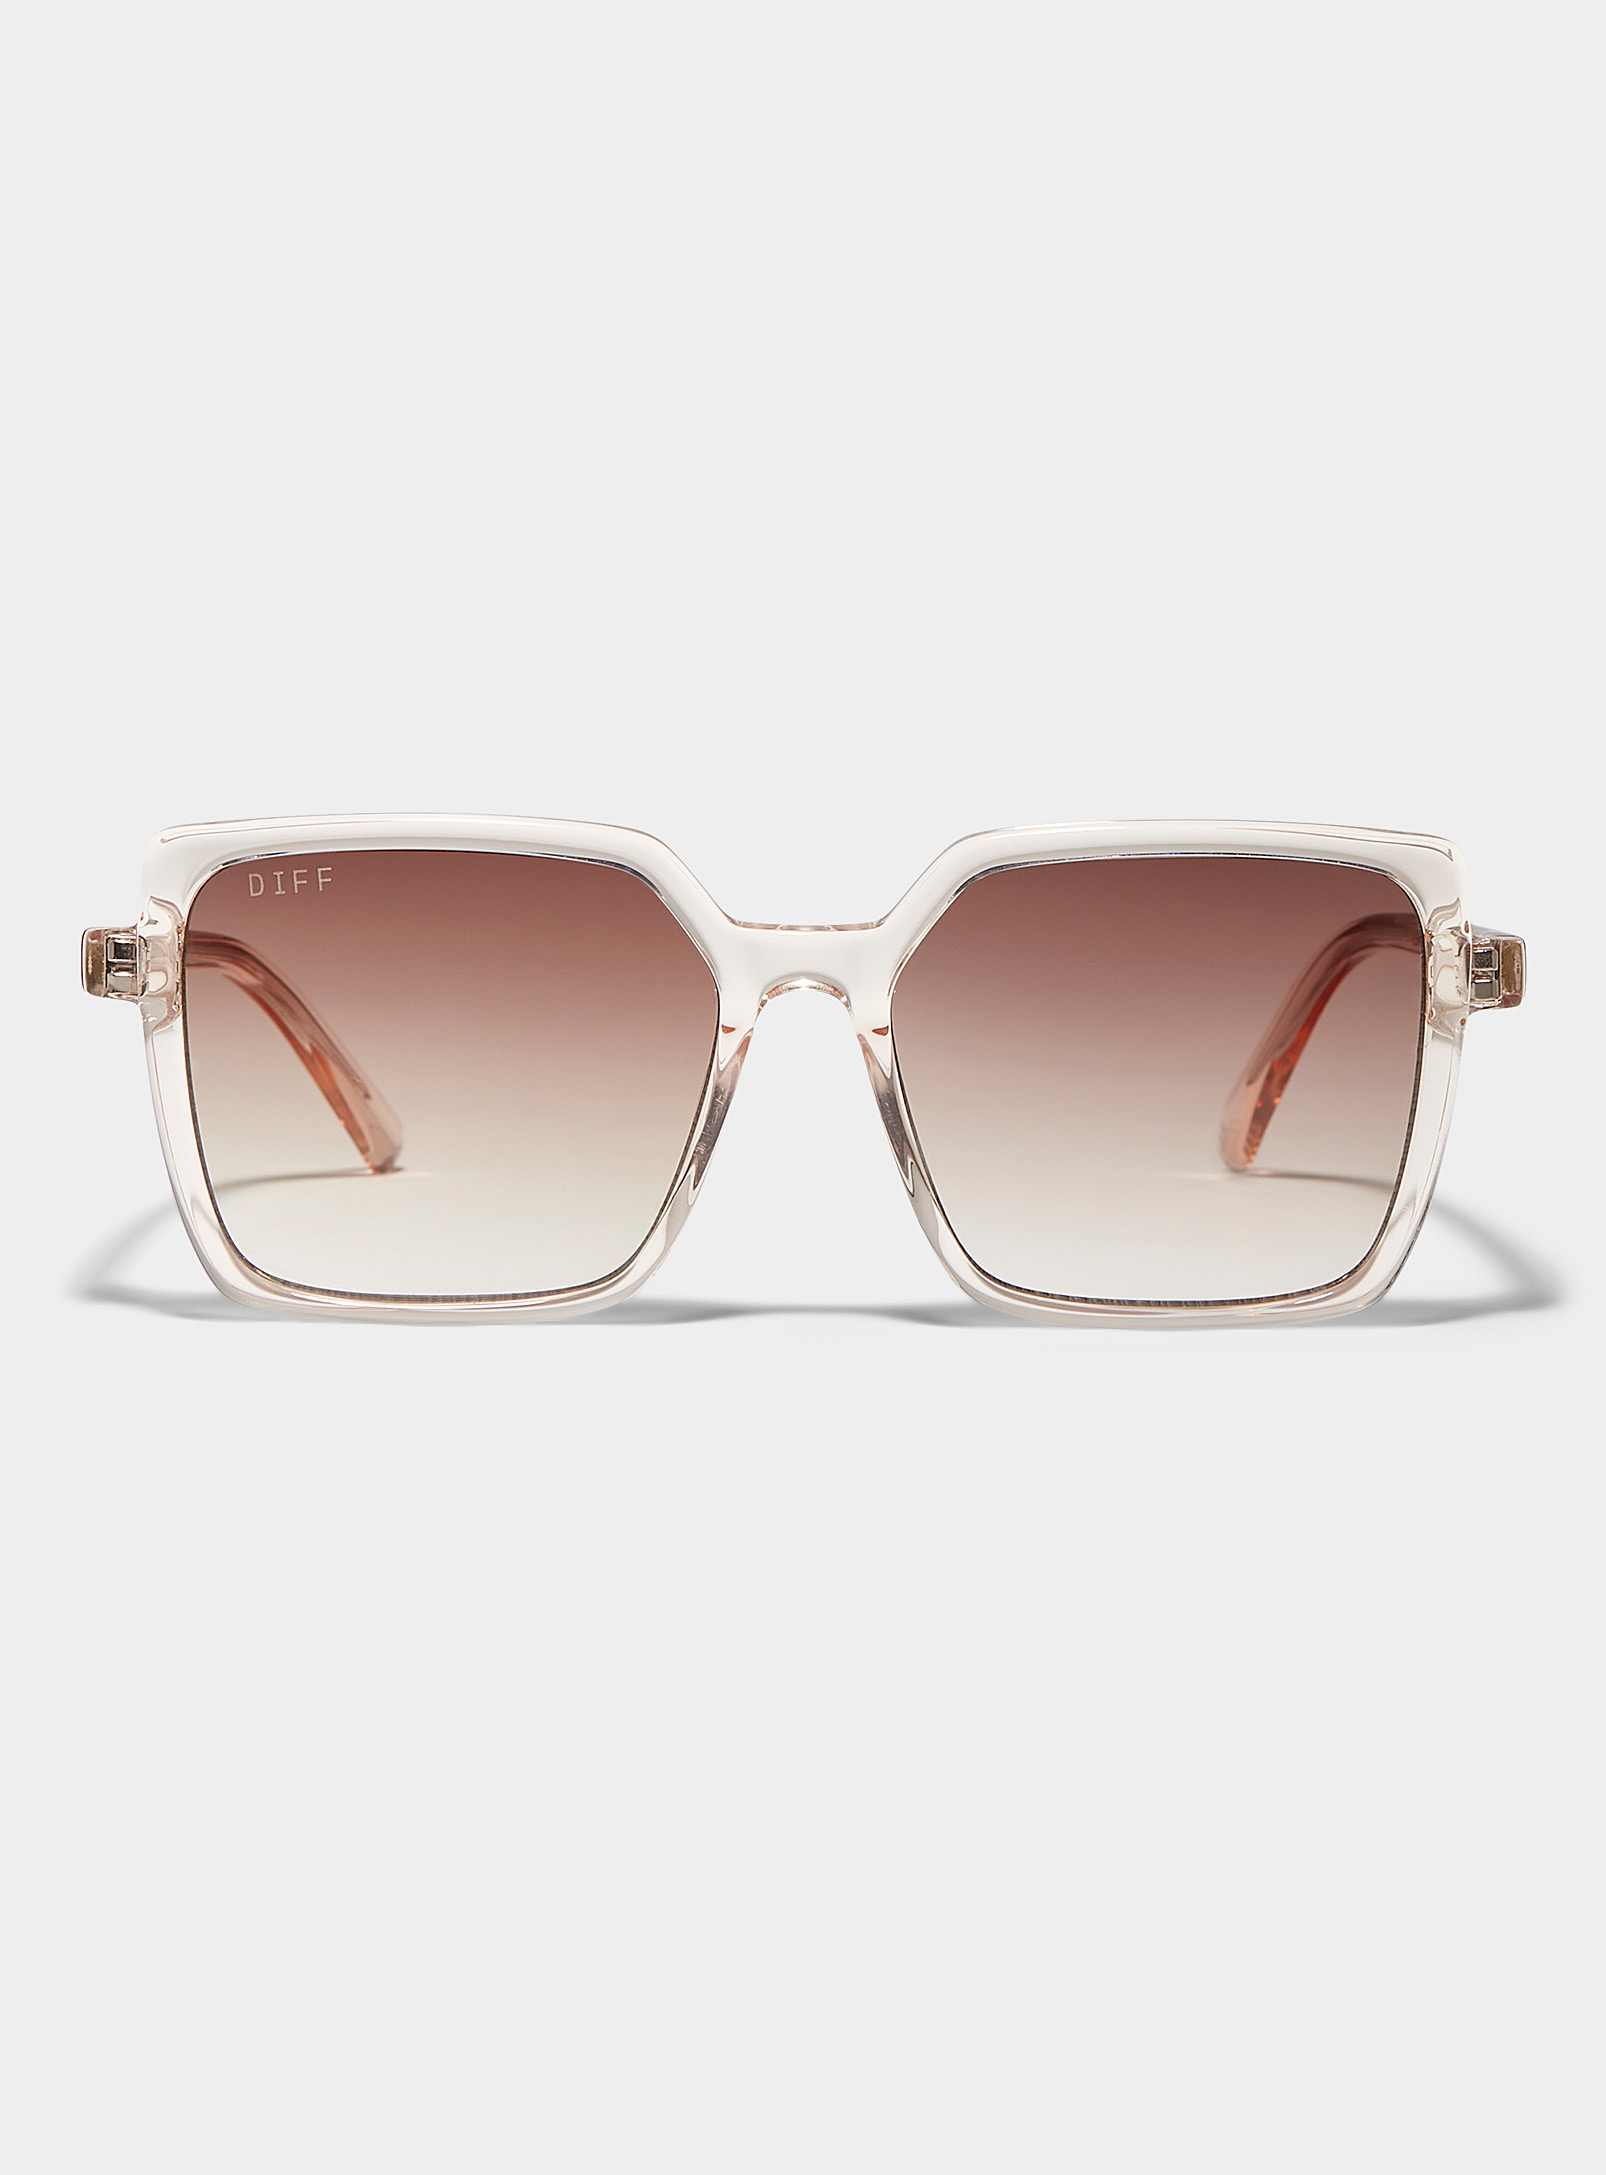 DIFF - Women's Esme square sunglasses